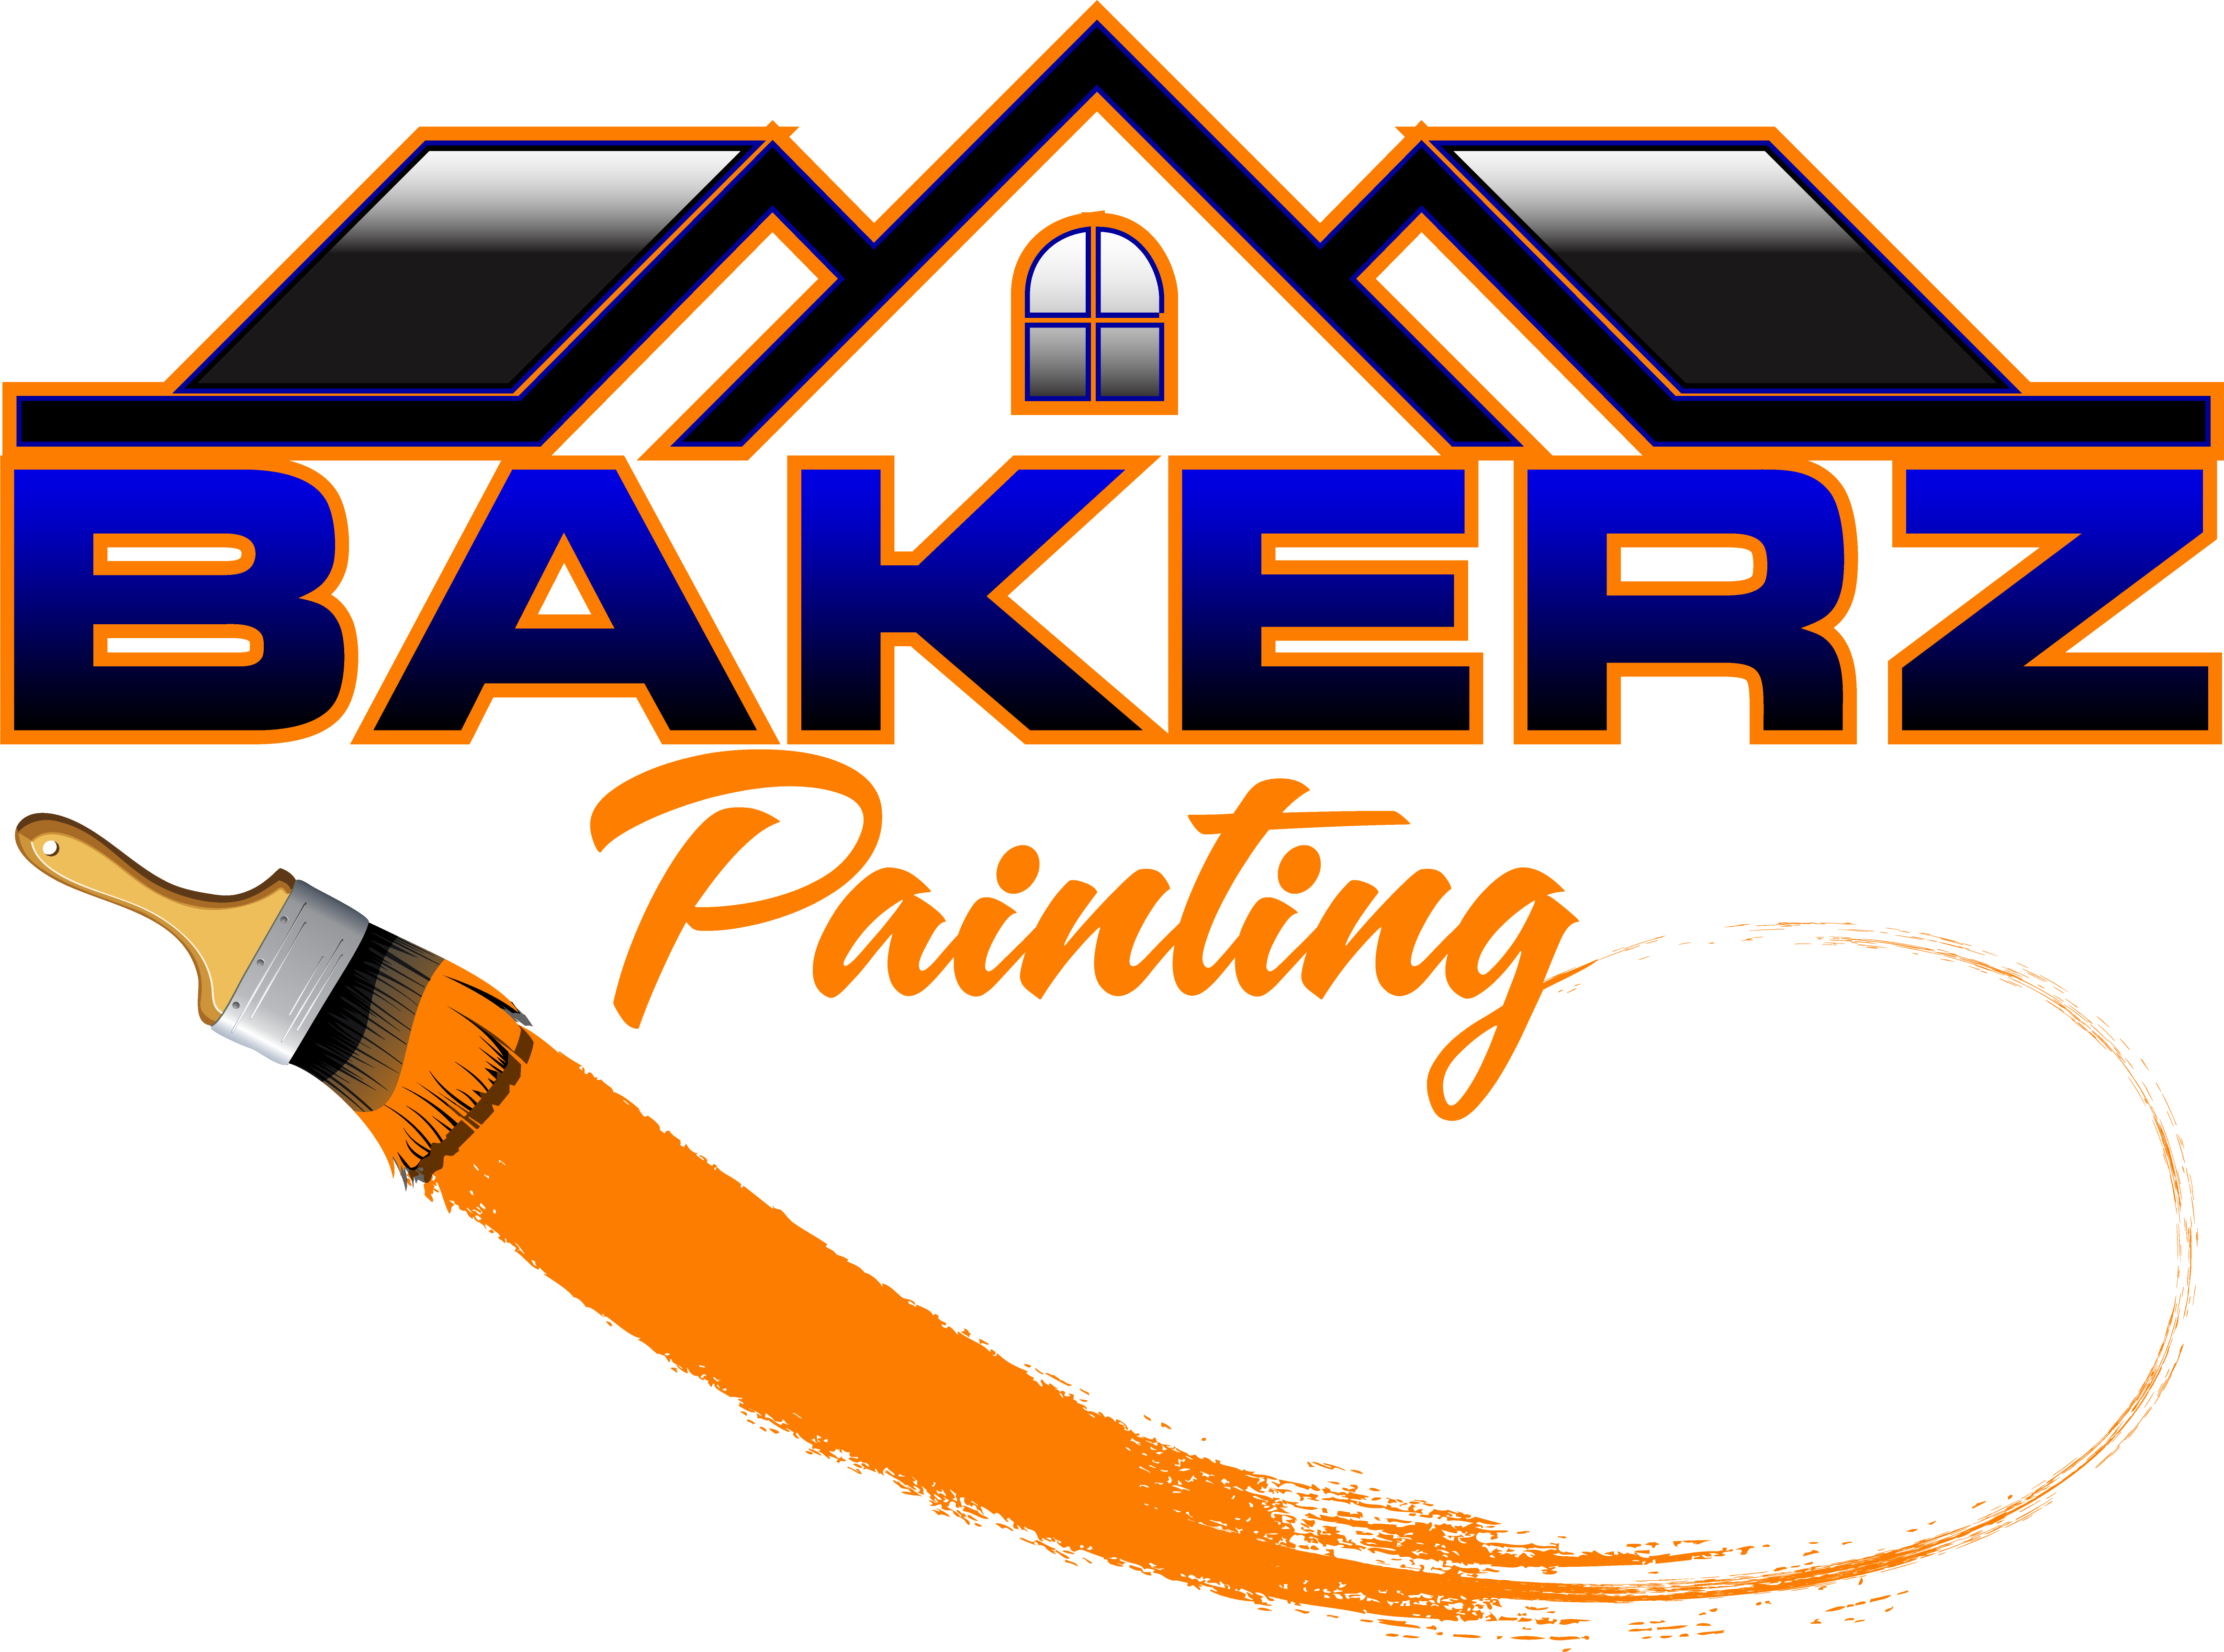 Bakerz Painting